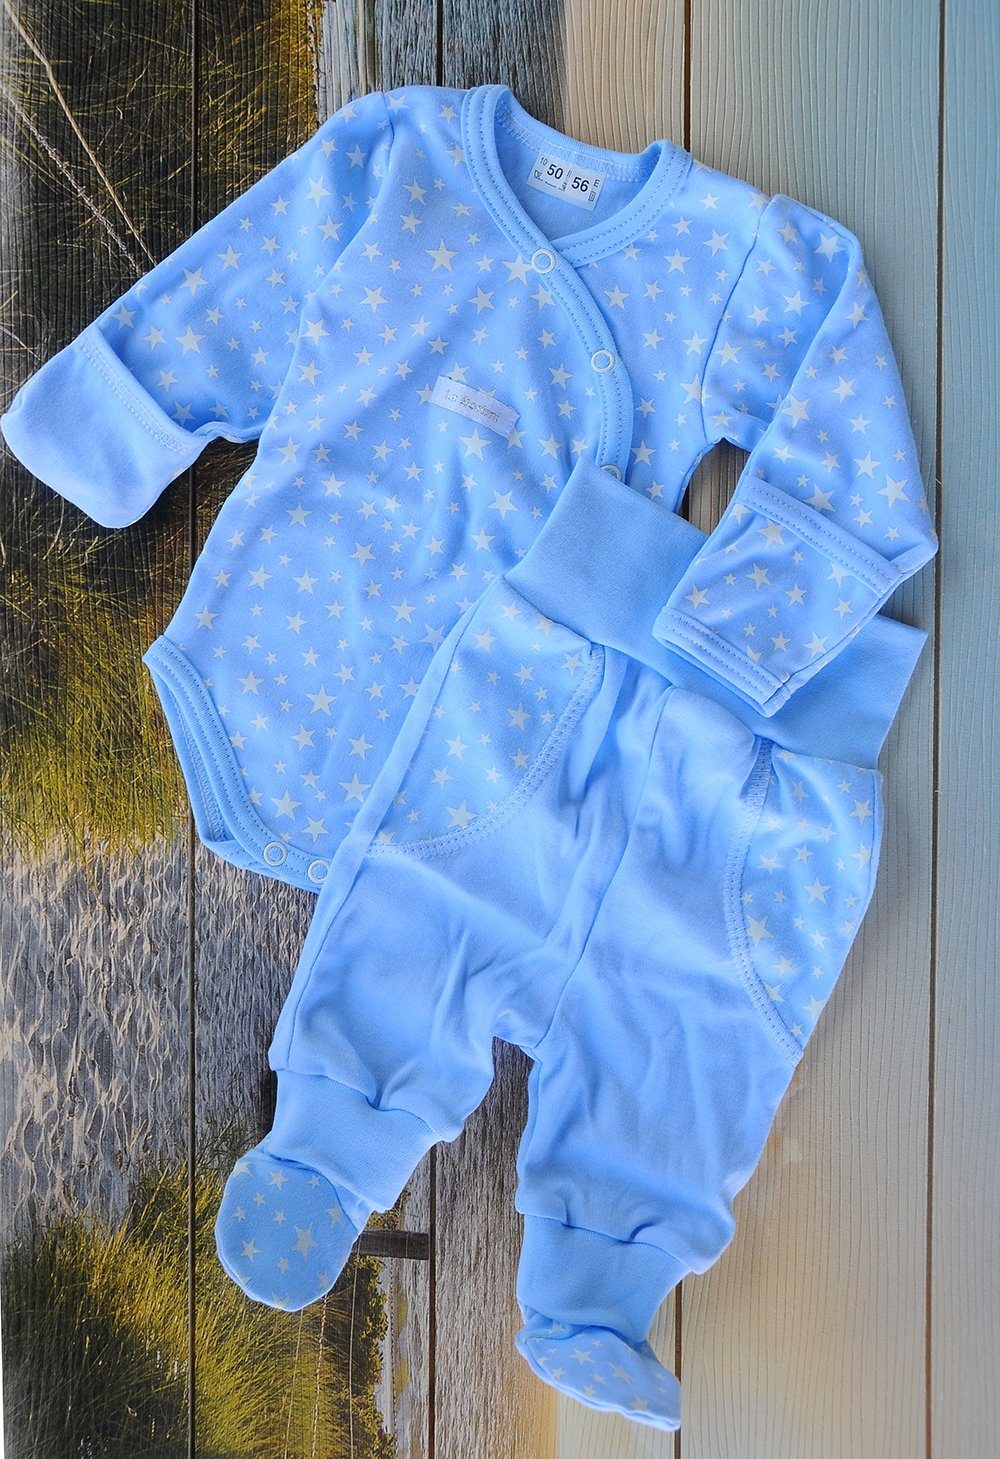 La Bortini Body & Hose Wickelbody Hose Baby Anzug 2tlg Set Body 44 50 56 62 68 74 80 86 aus reiner Baumwolle, mit Sternenmuster